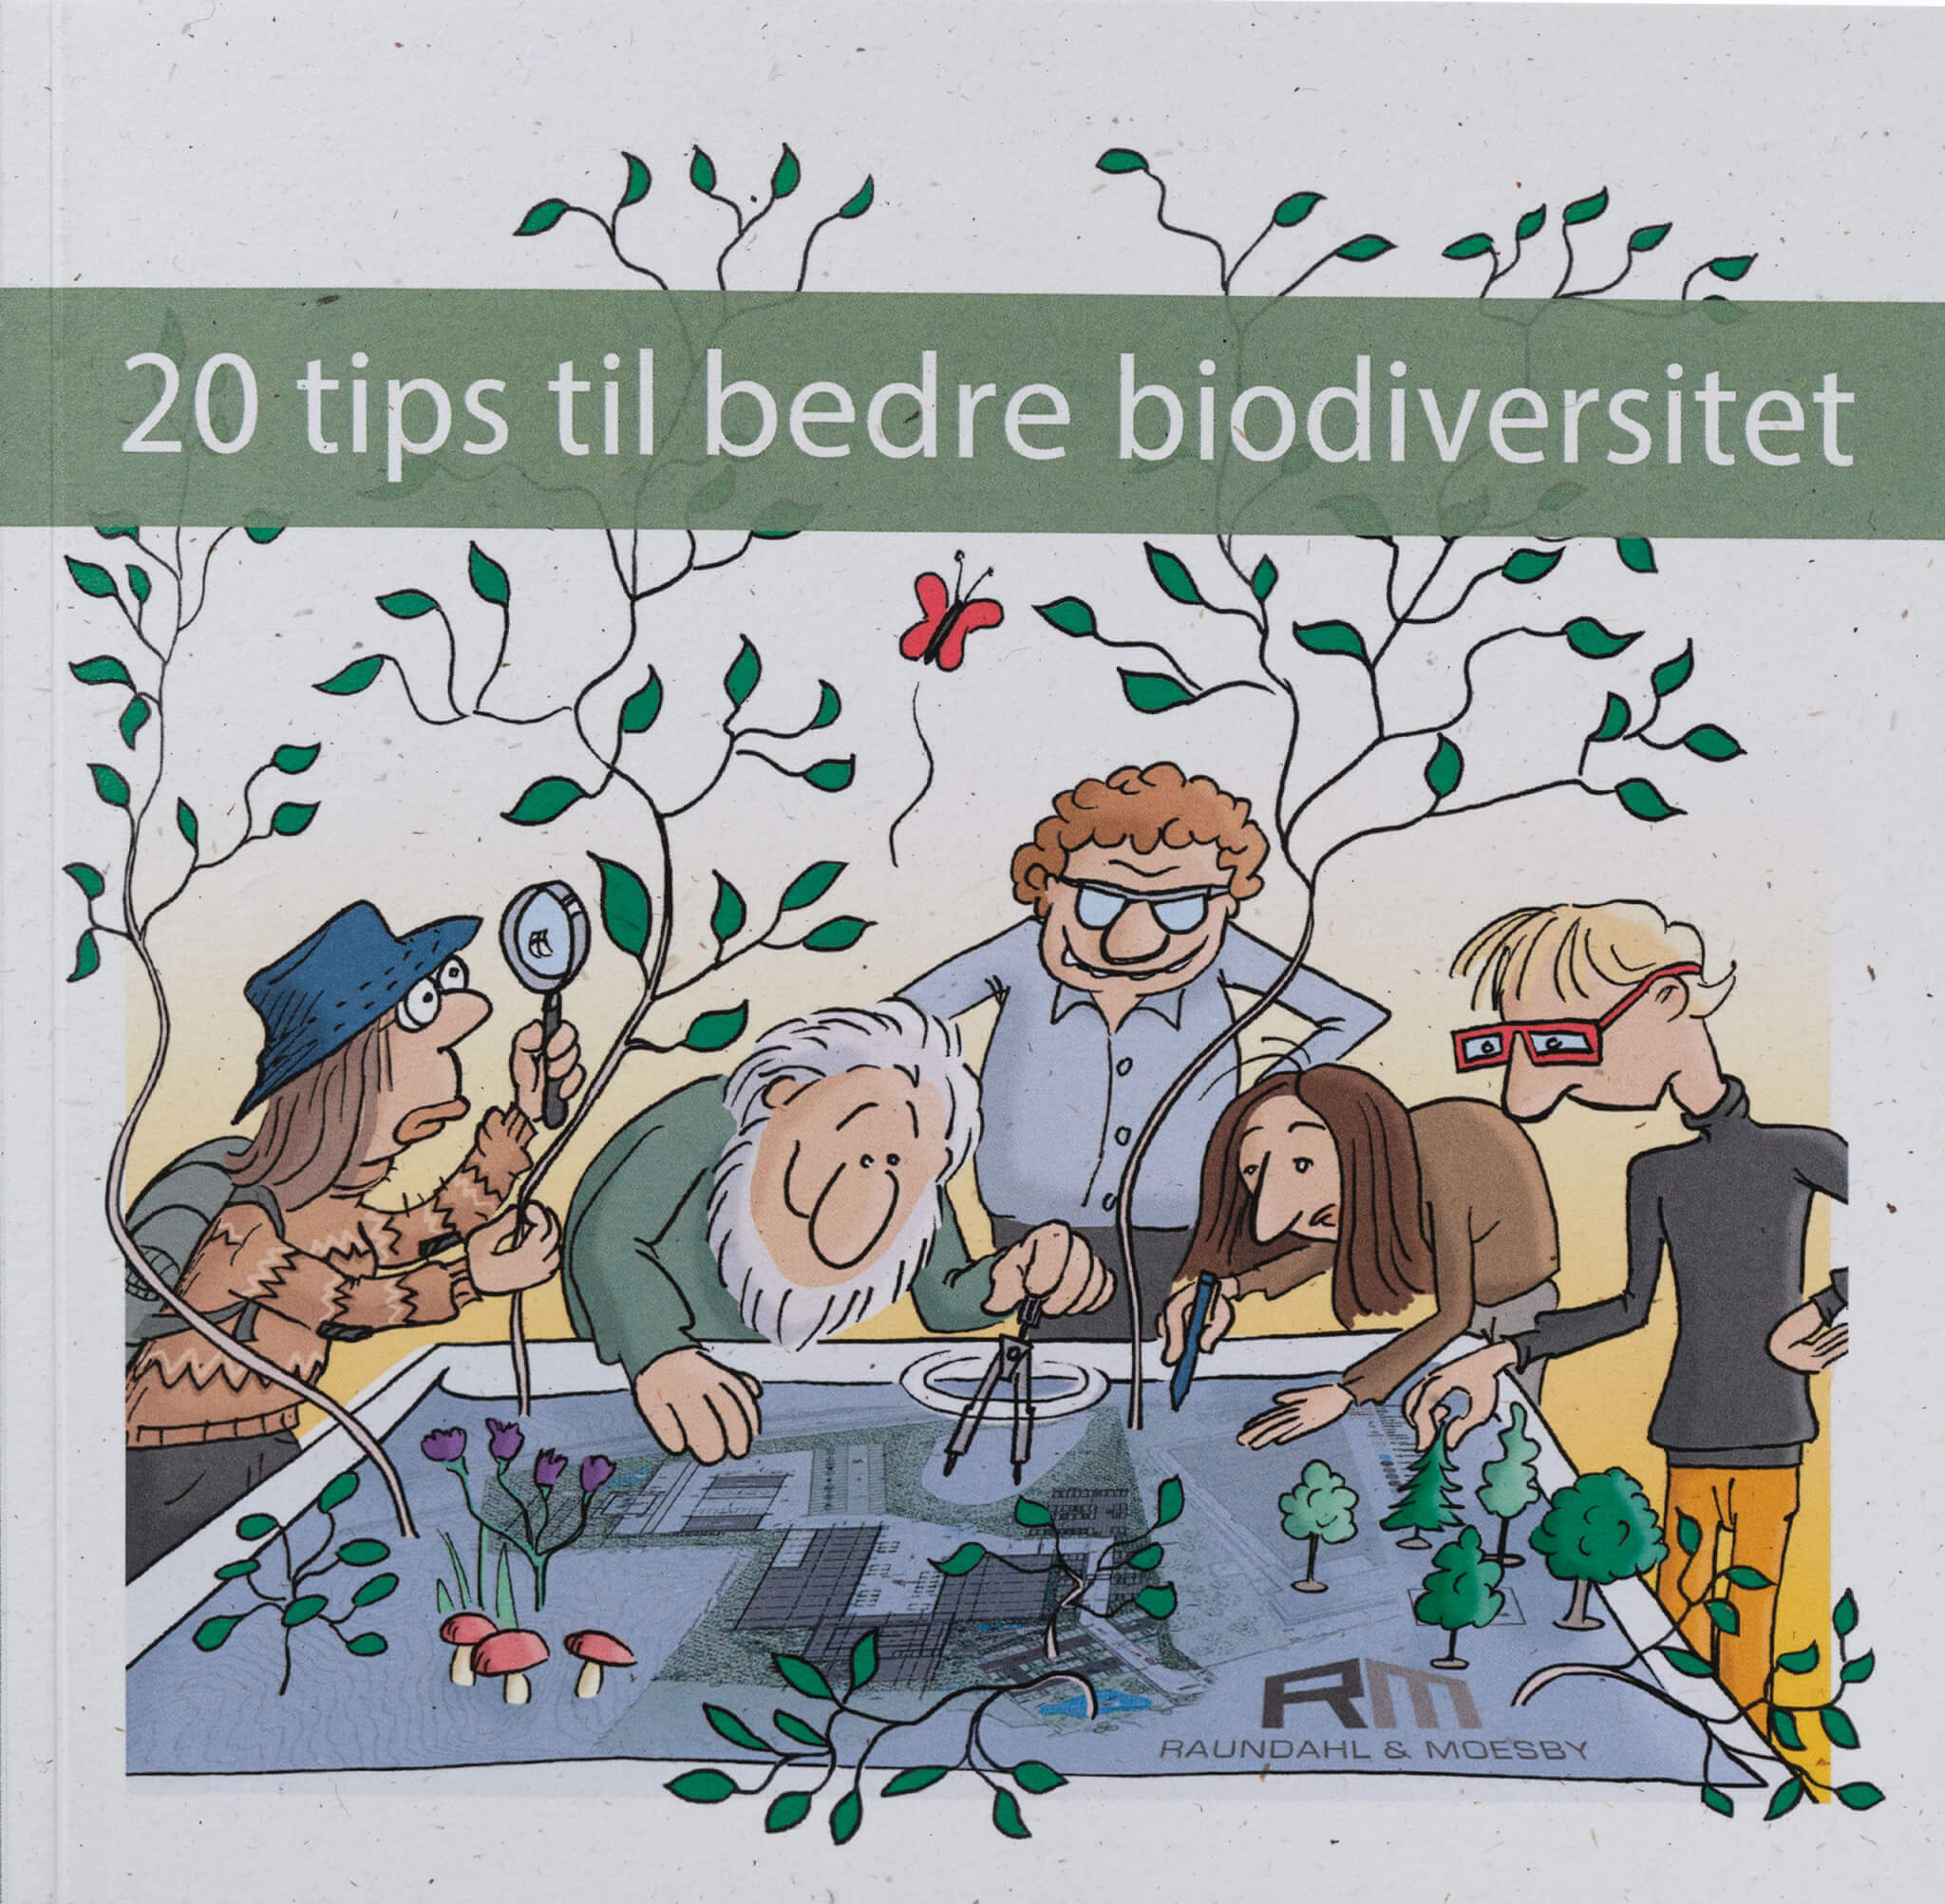 Vores bog med "20 tips til bedre biodiversitet"